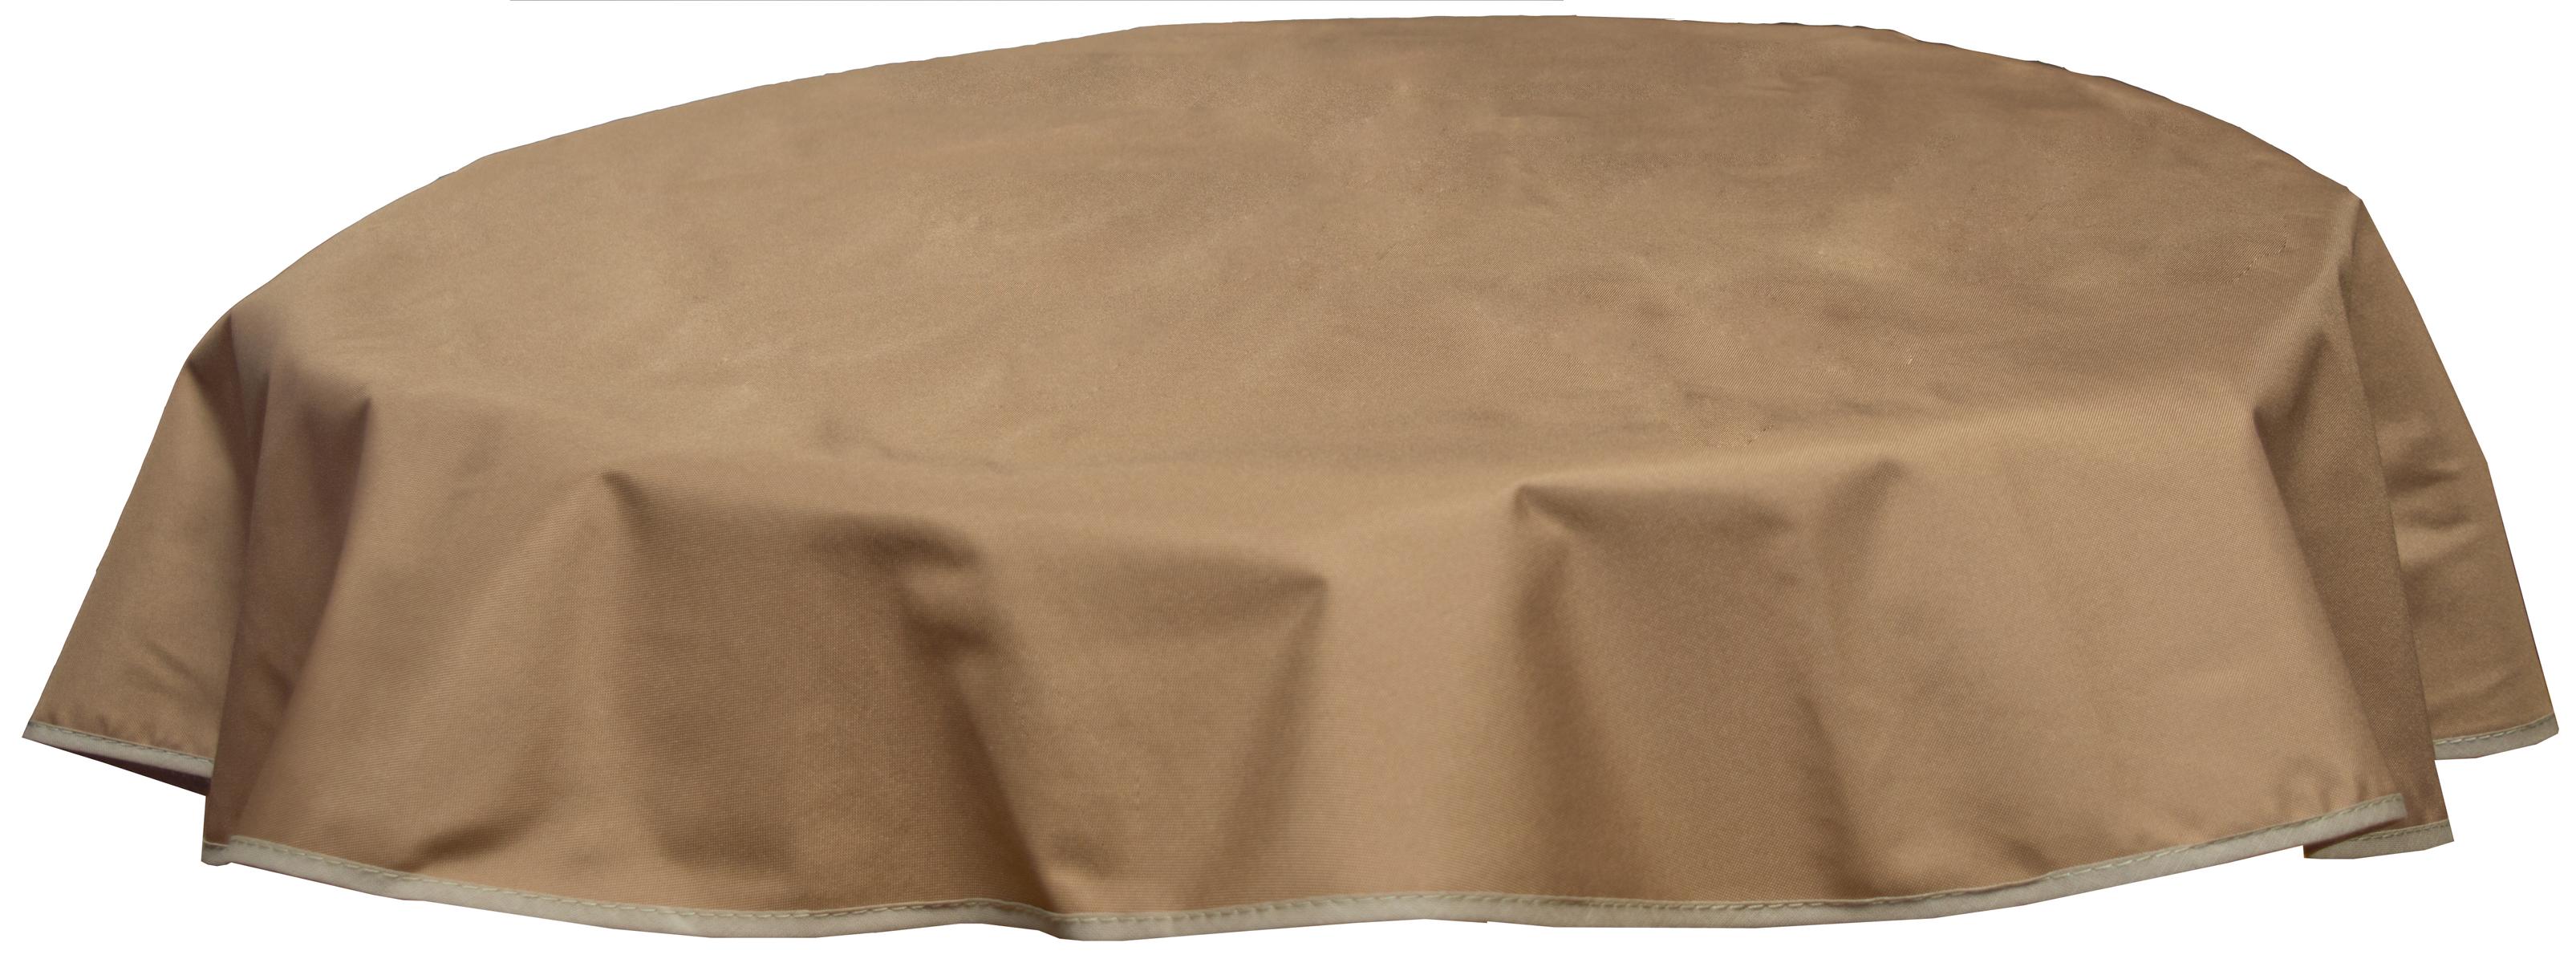 Runde Tischdecke 160cm wasserabweisend 100% Polyester in sand